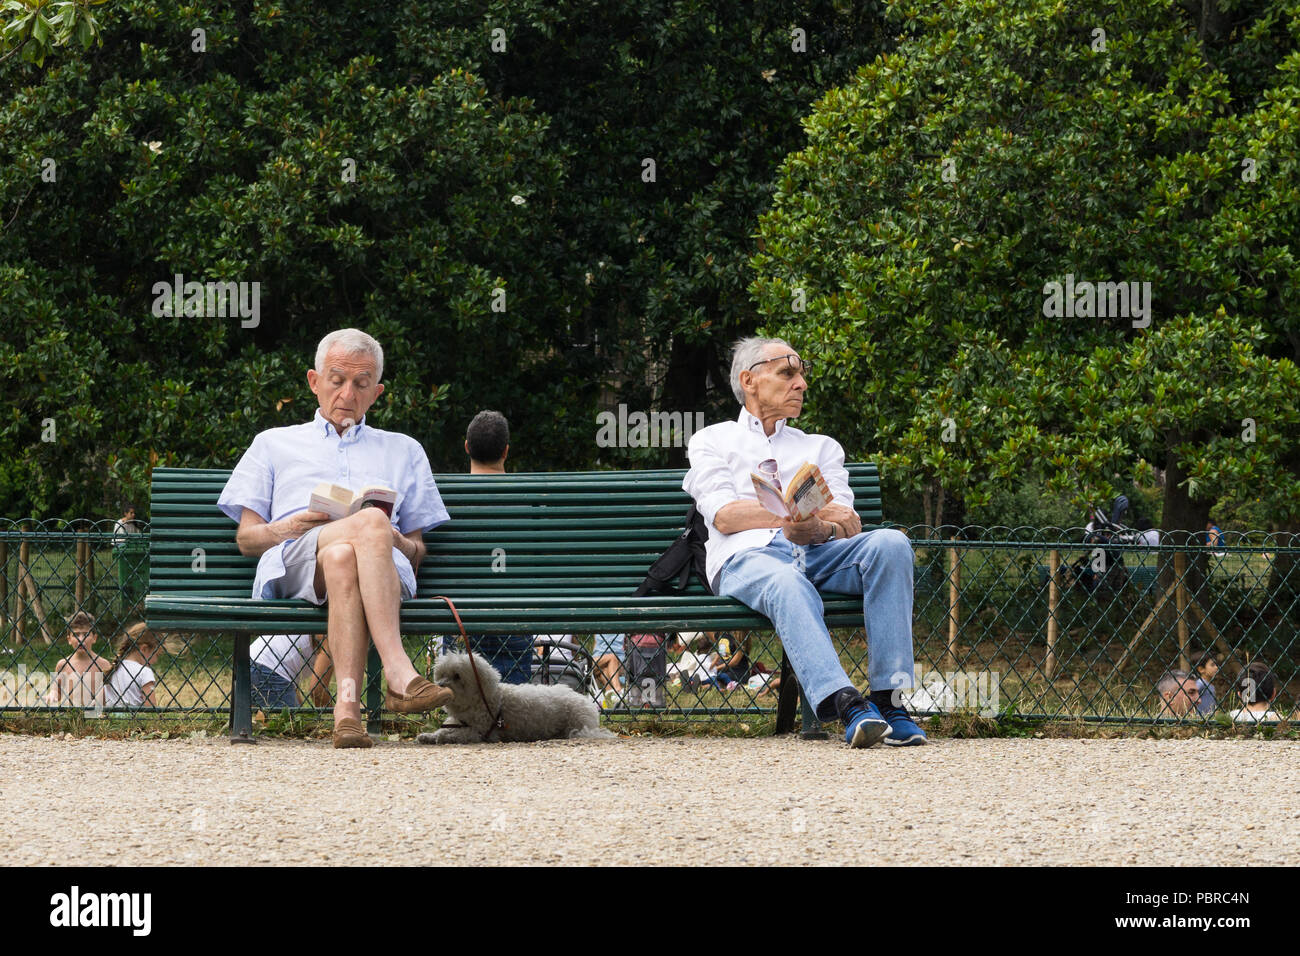 Anziani francesi - due anziani parigini godendo di domenica pomeriggio nel parco Monceau a Parigi, in Francia, in Europa. Foto Stock